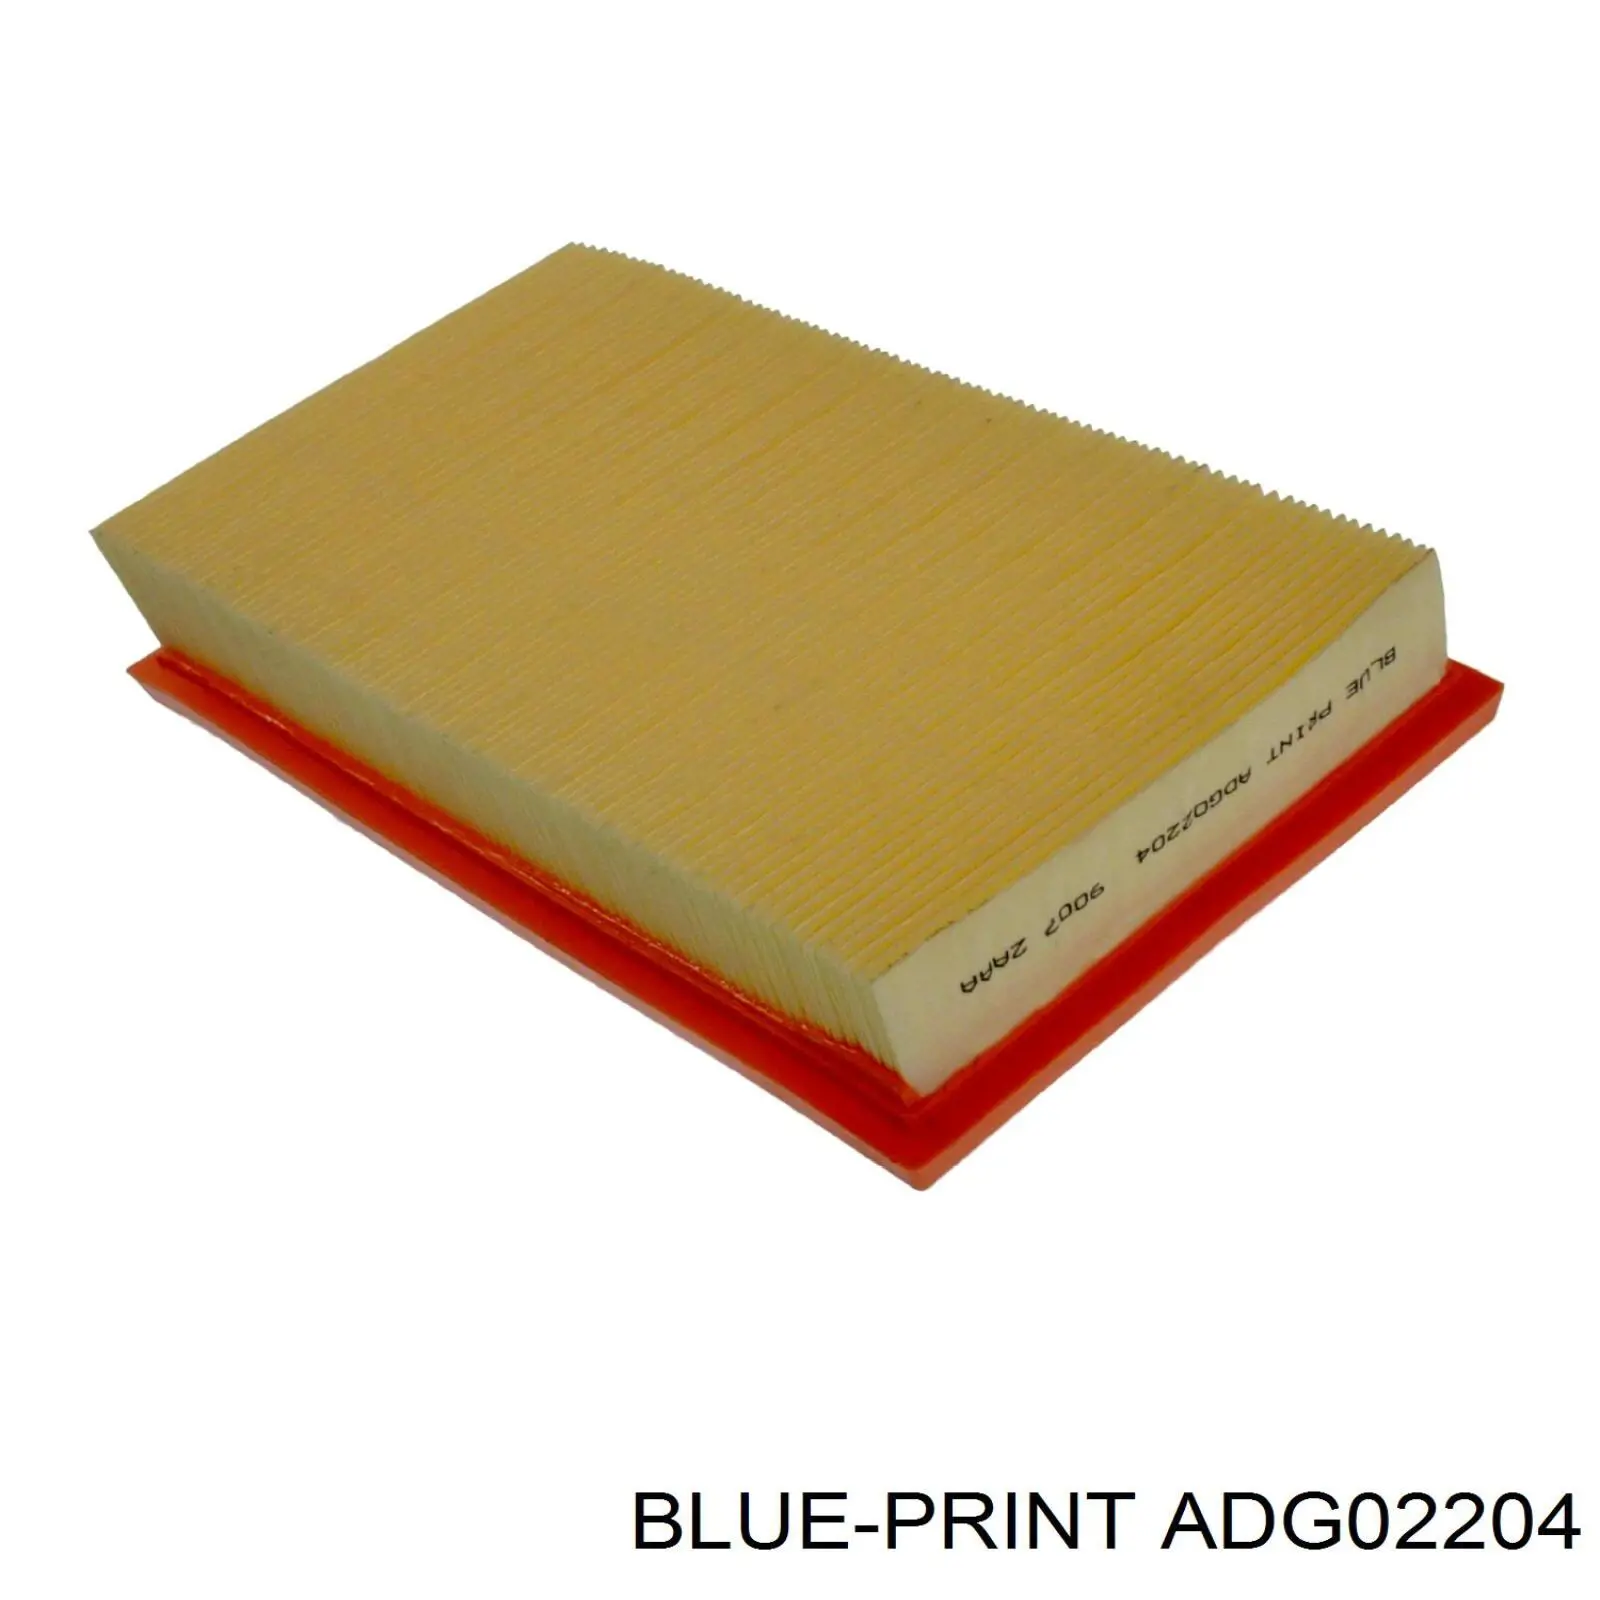 ADG02204 Blue Print filtro de aire